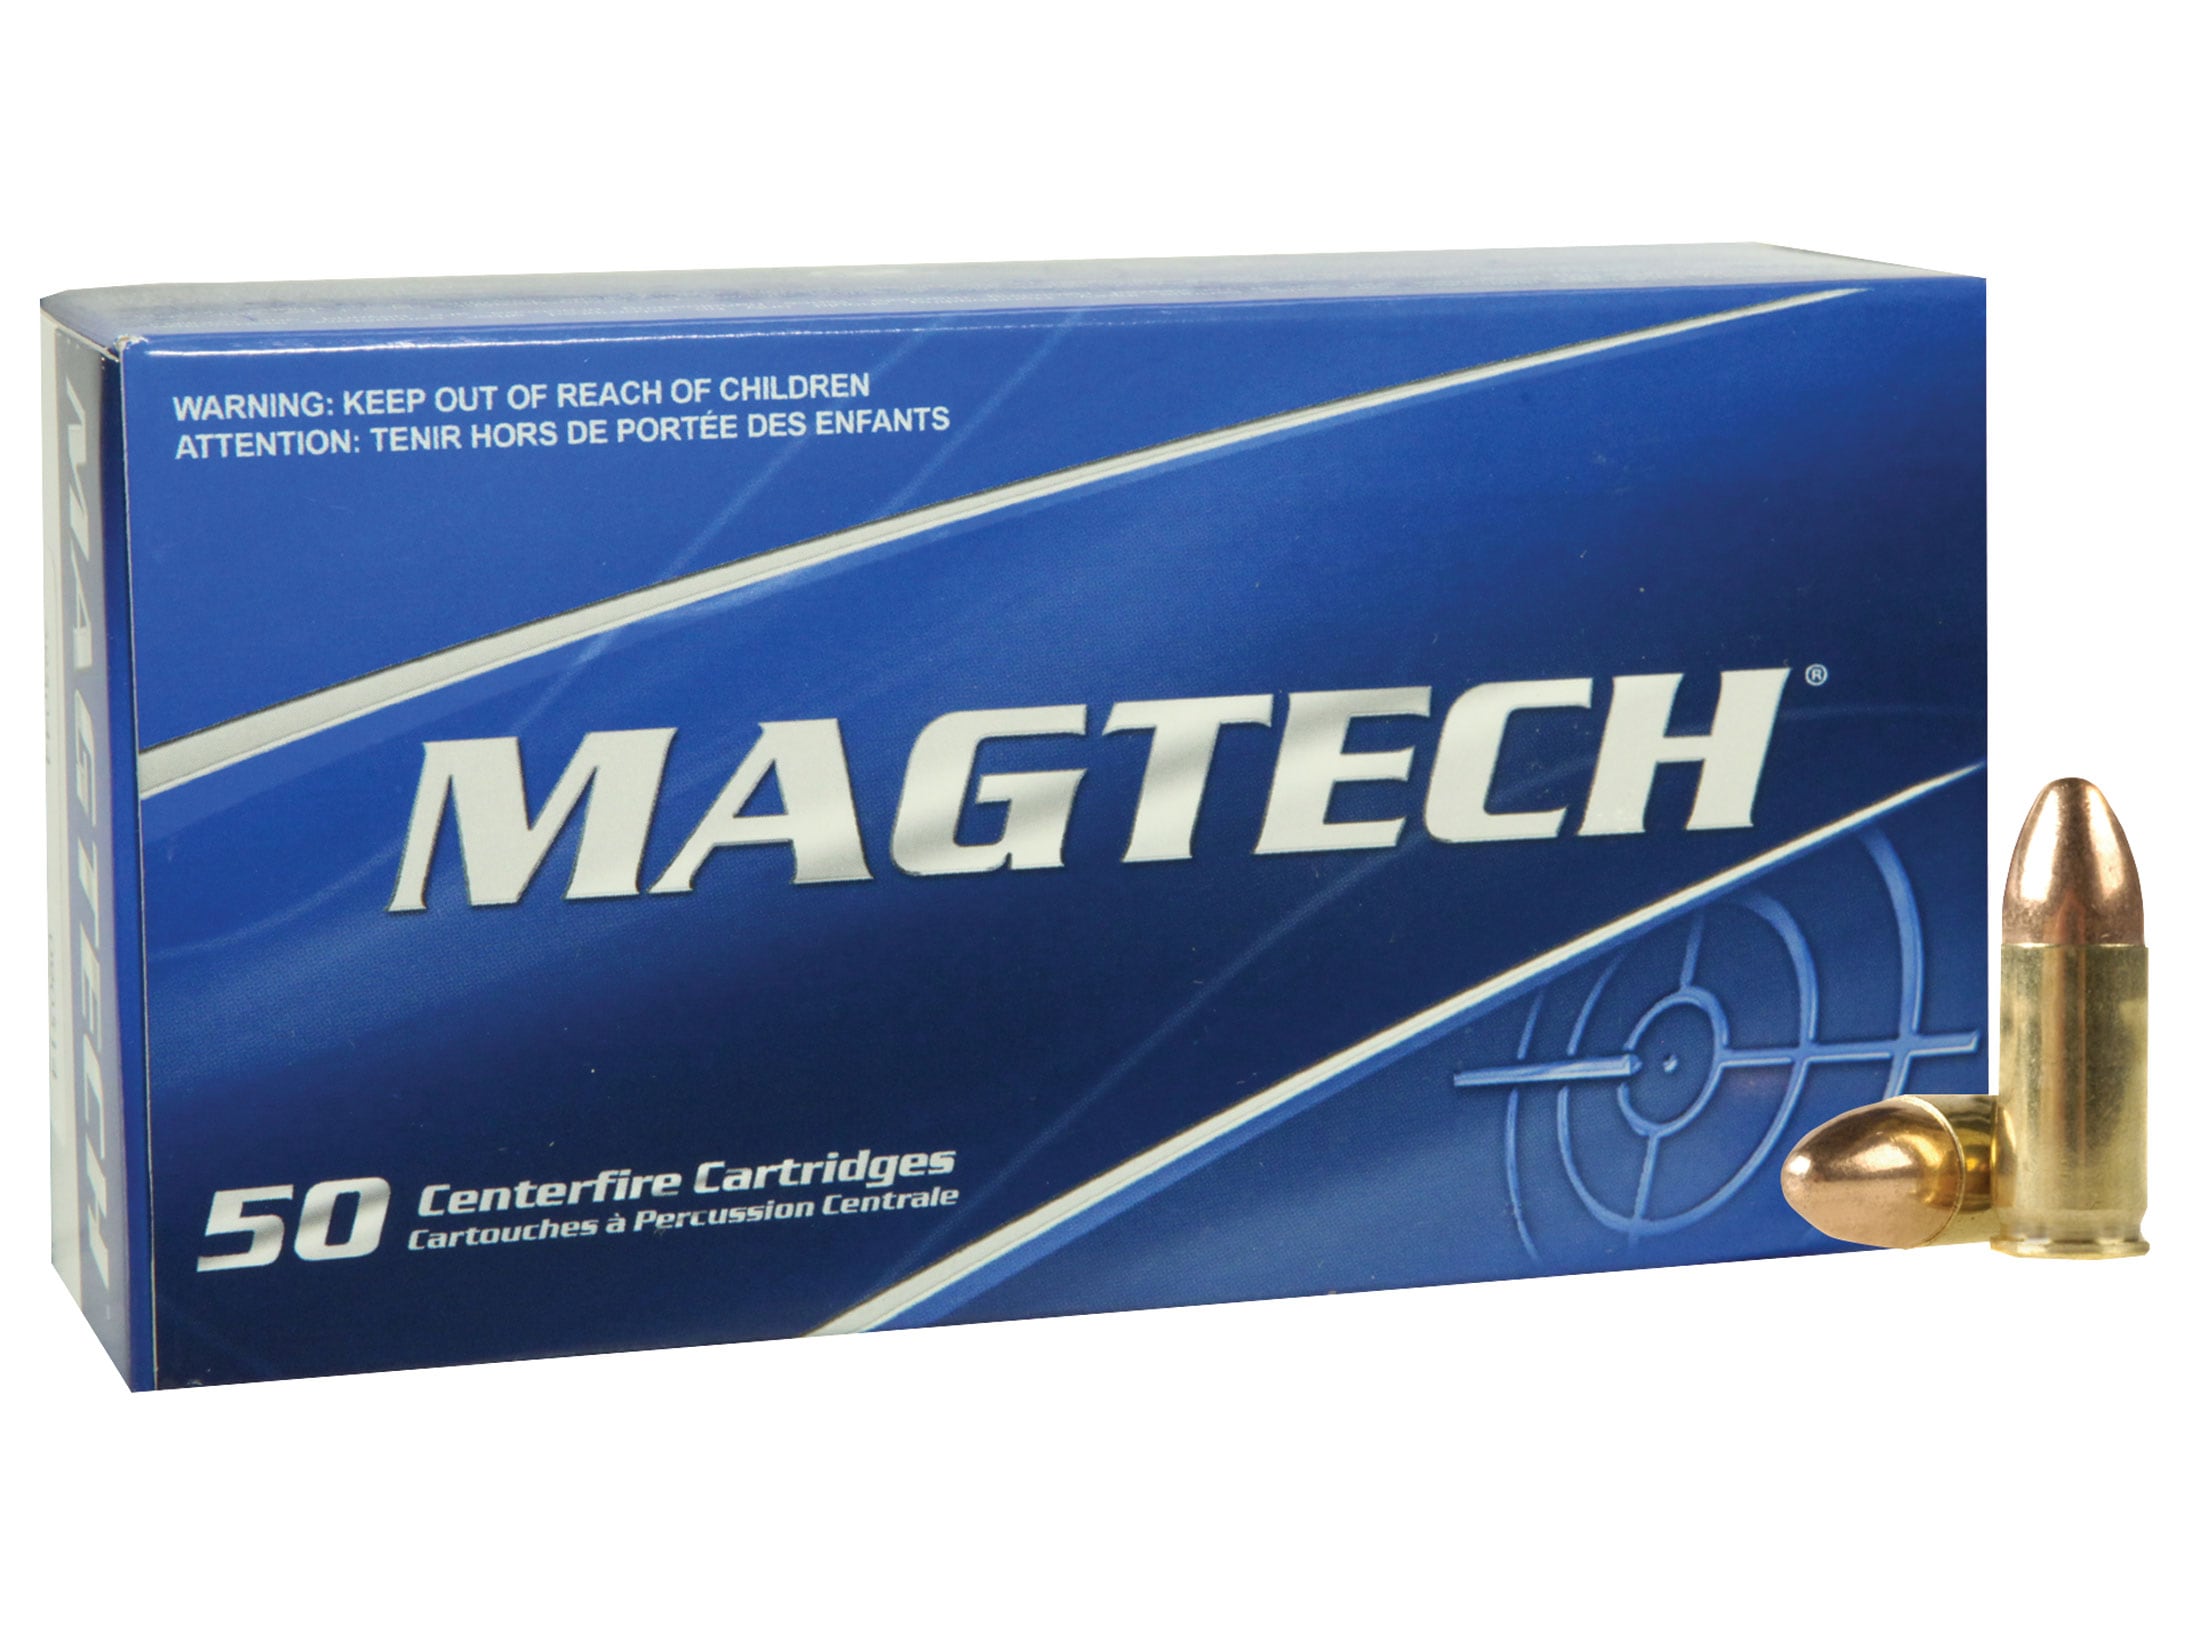 Magtech Ammunition 9mm Luger 115 Grain Full Metal Jacket